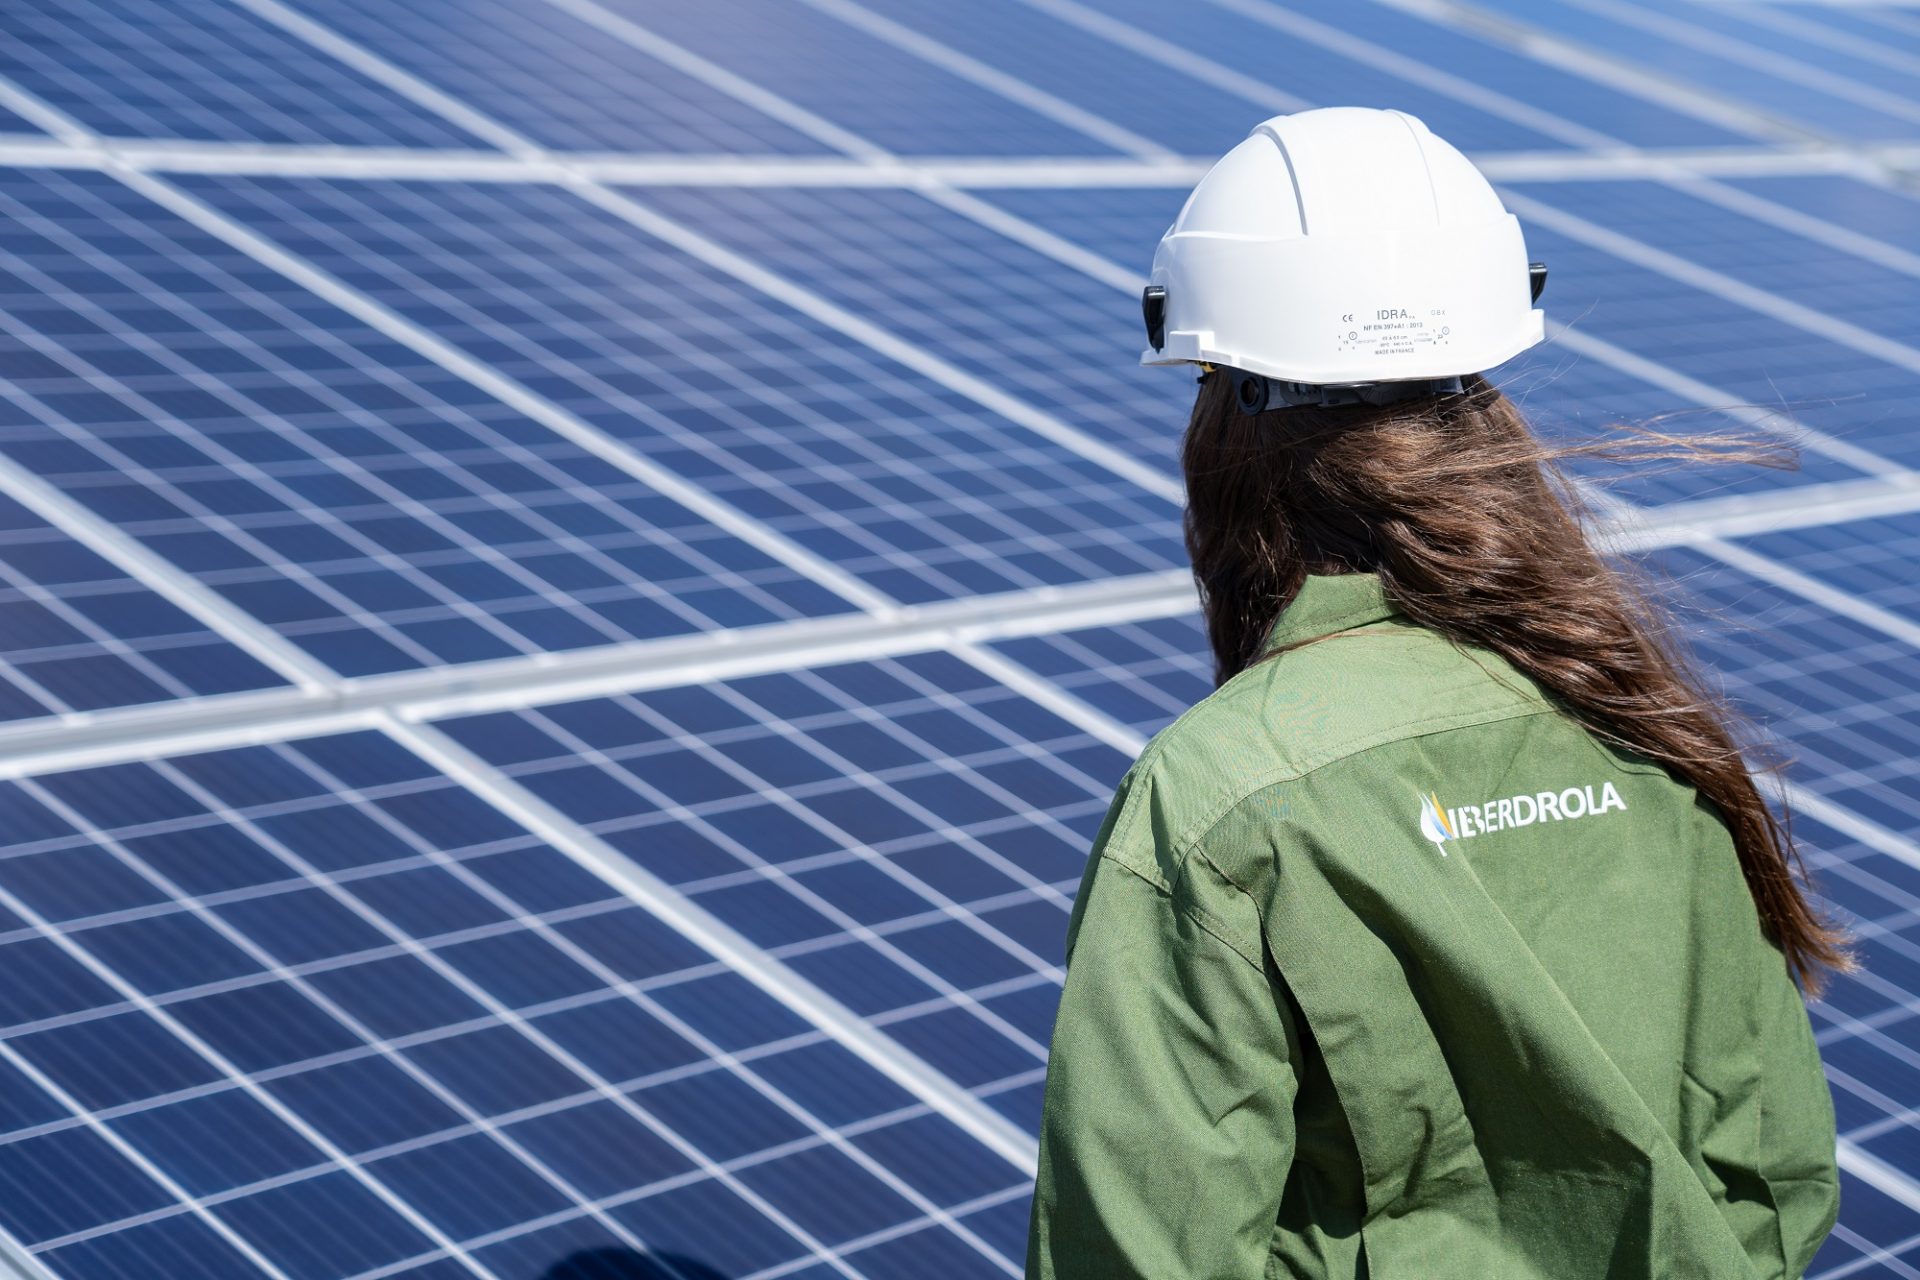 Trabajadora de Iberdrola en una de las instalaciones fotovoltaicas de la compañía. FOTO: Iberdrola